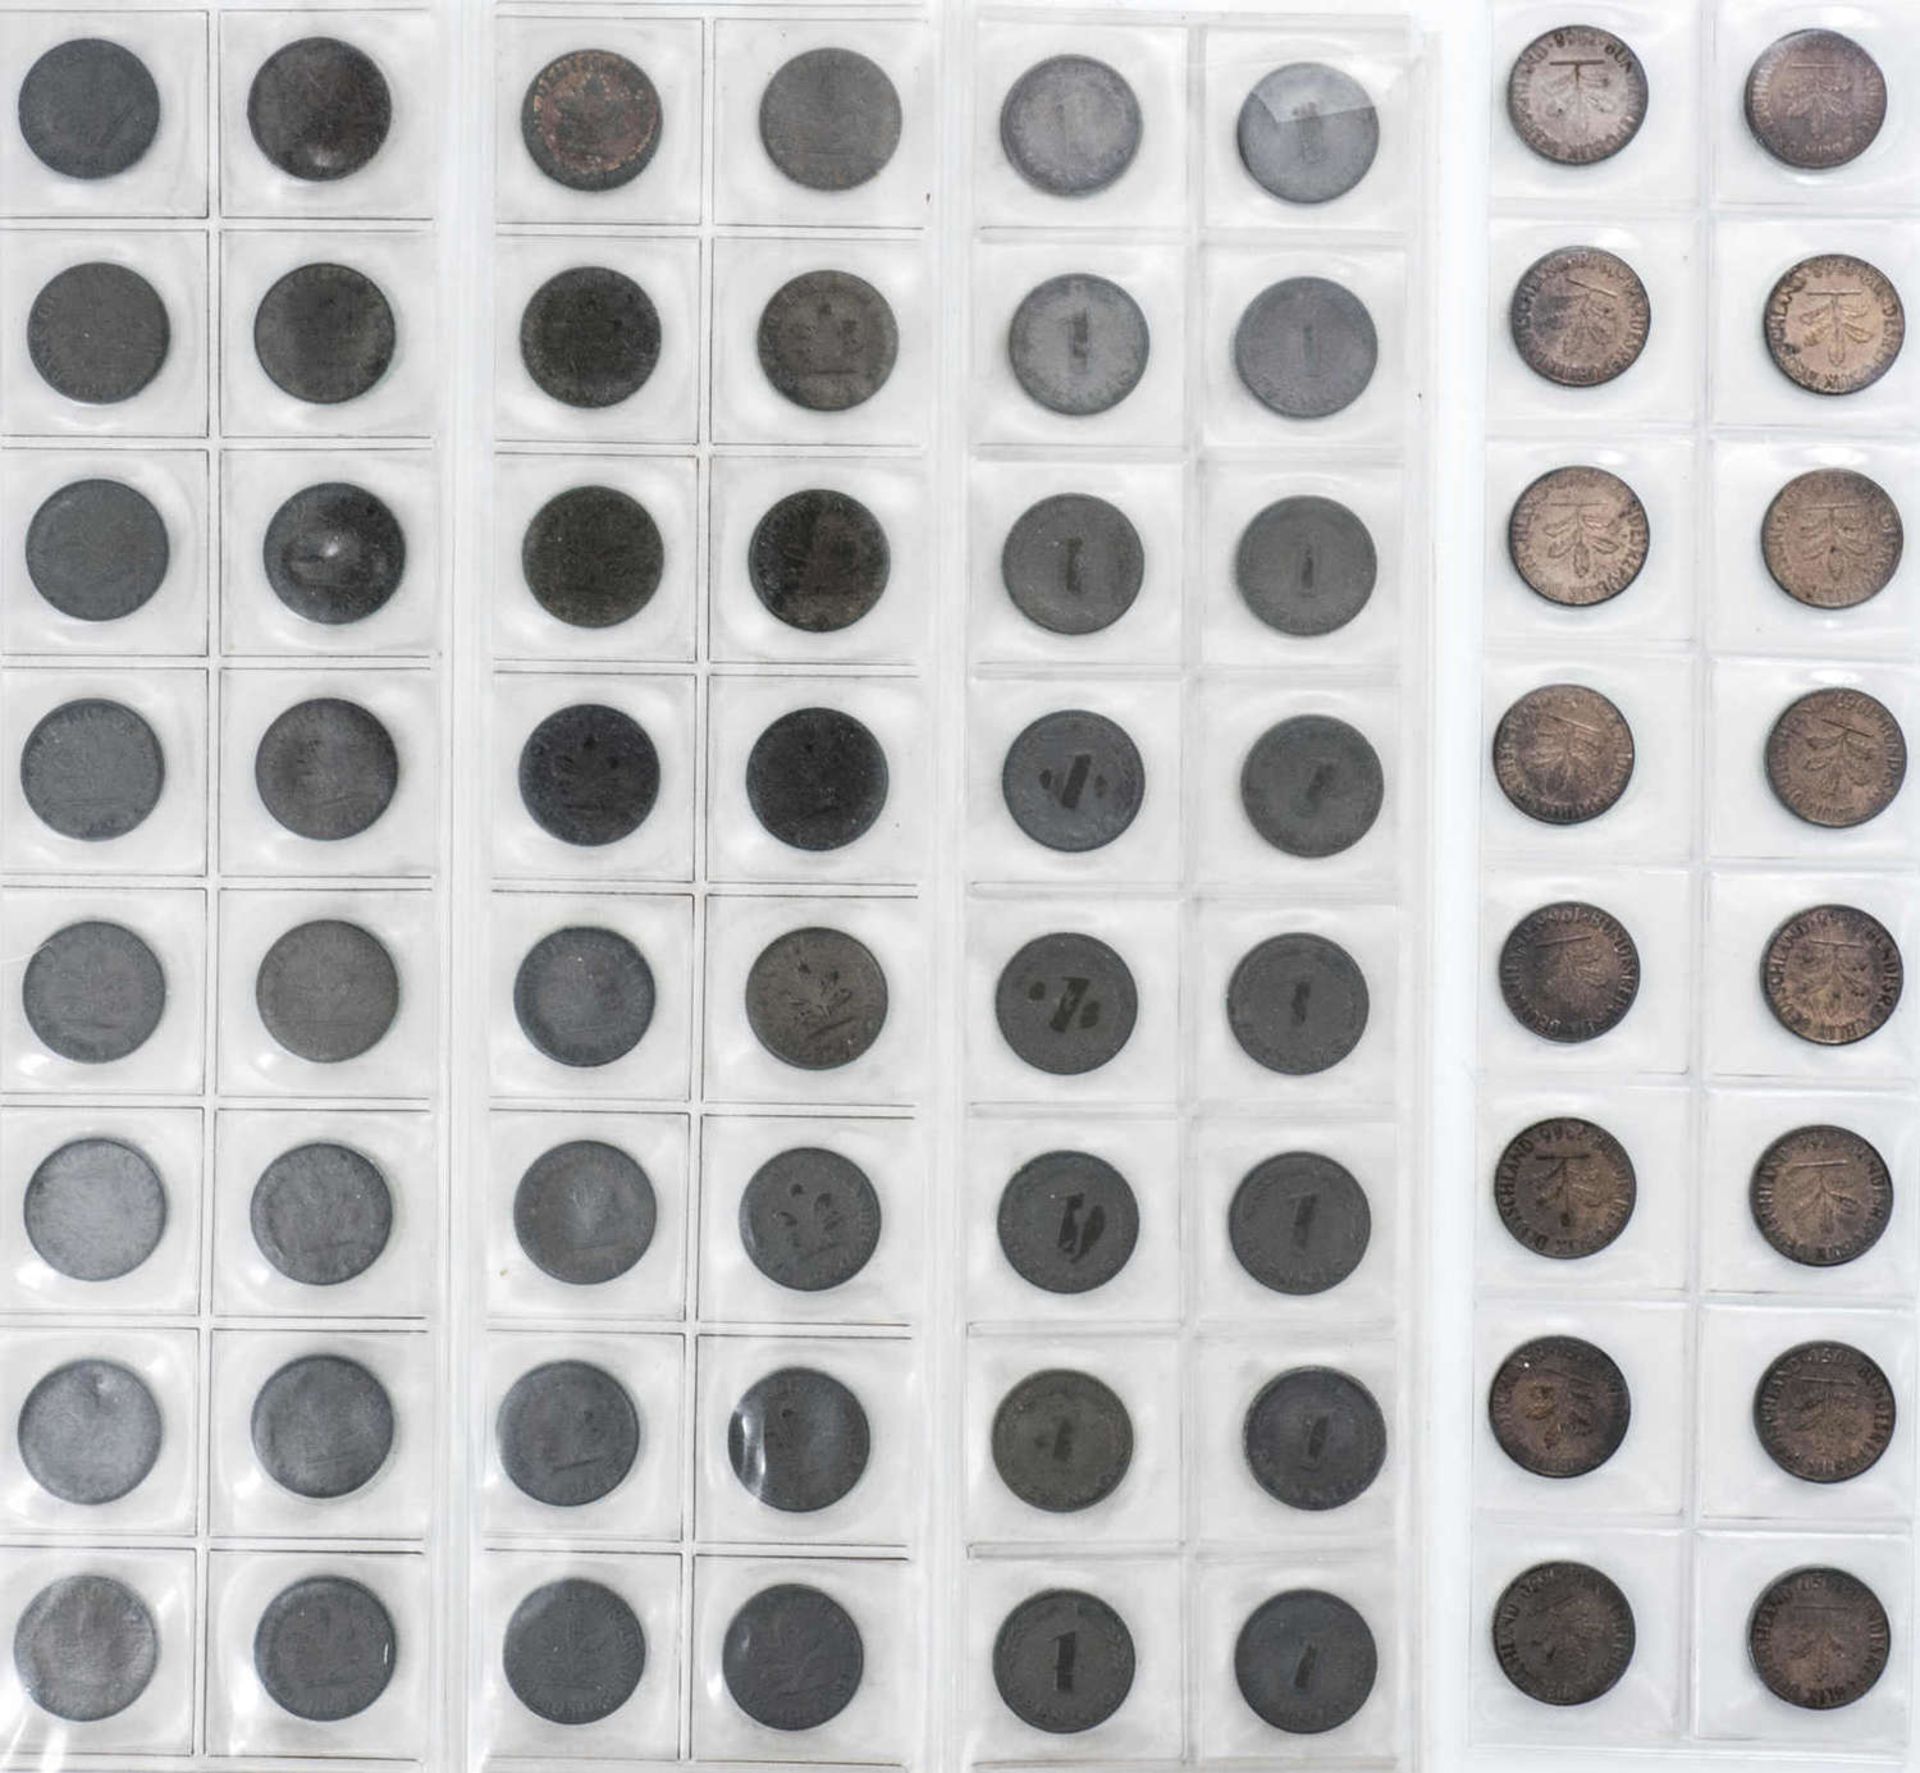 BRD Sammlung 1 Pfennig und 2 Pfennig - Münzen. Überwiegend alle vier Münzprägestätten. Dazu ei